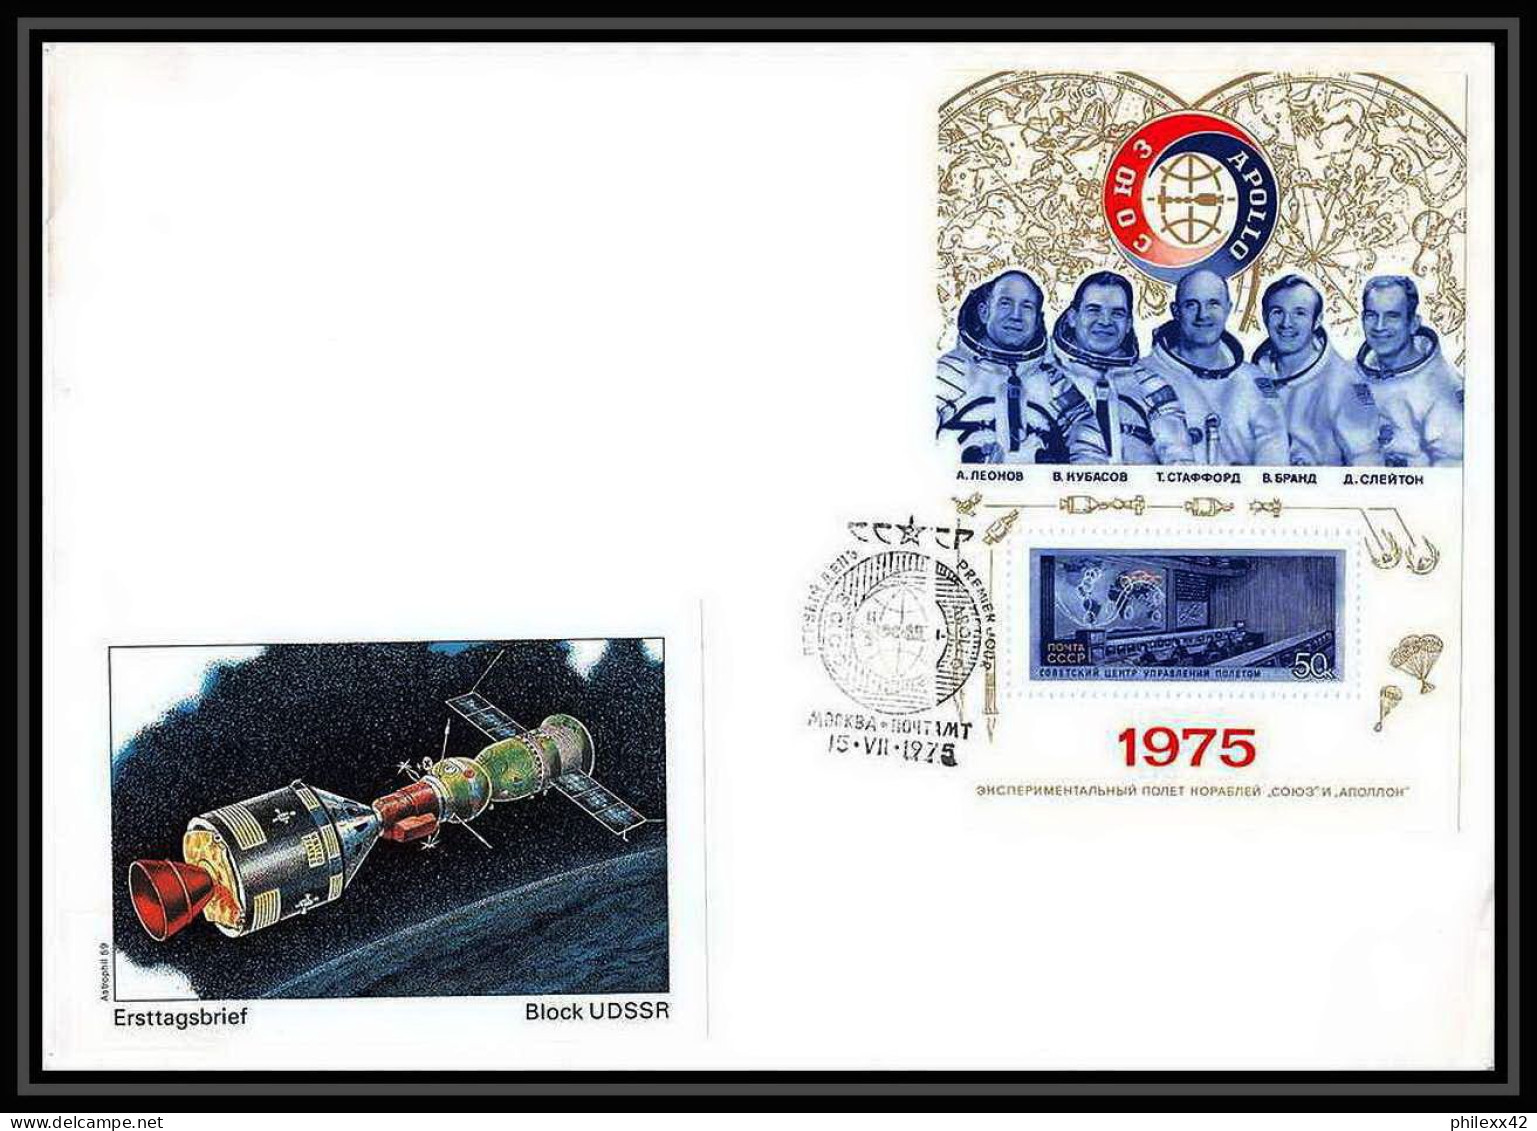 11282/ Espace (space) Lettre (cover) Urss USSR 15/7/1975 Apollo Soyuz Project (soyouz Sojus) Bloc 104 Fdc - Rusia & URSS